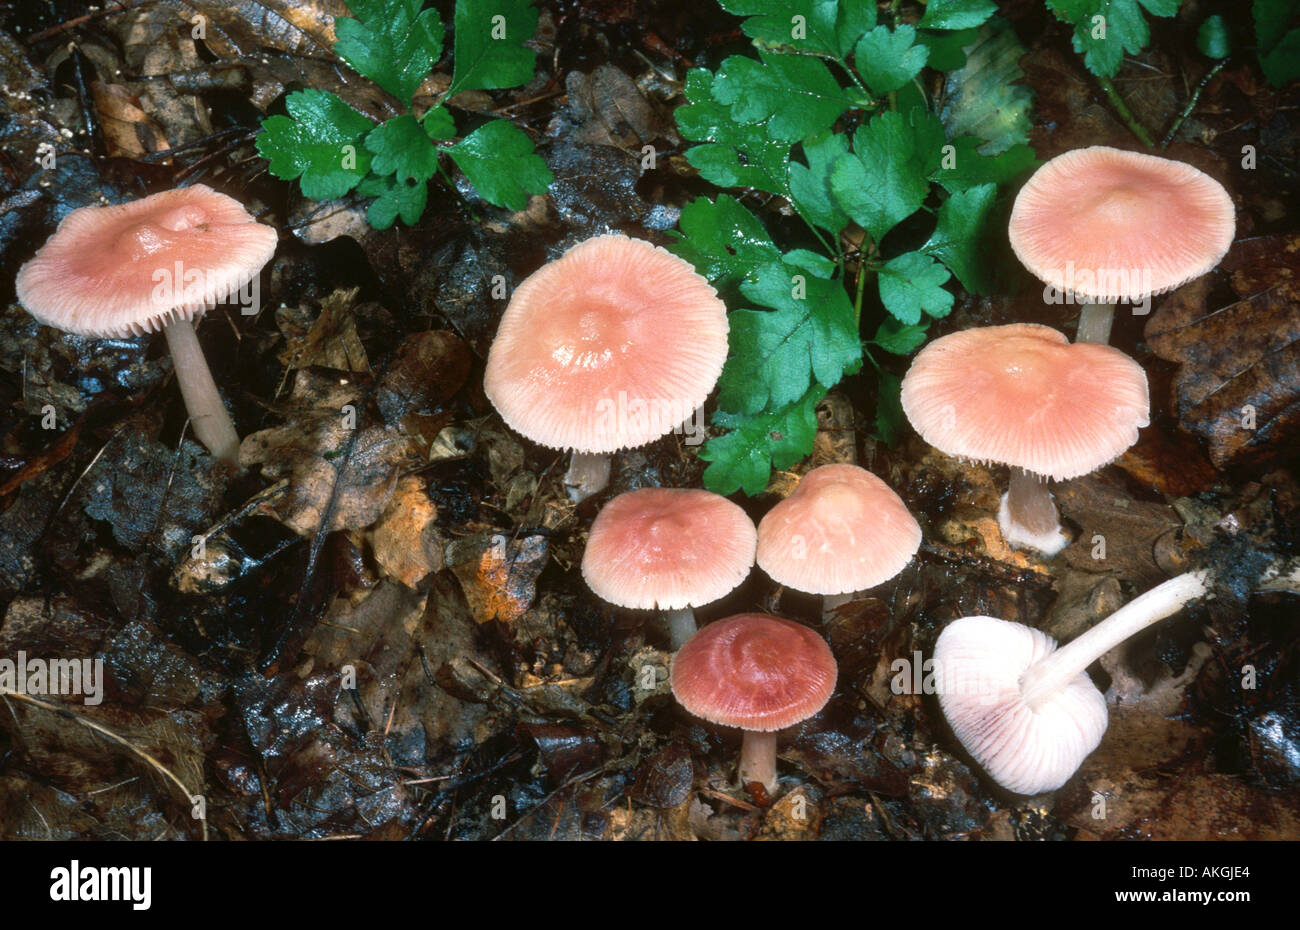 bonnet (Mycena rosea), group on forest ground, Germany, Rhineland-Palatinate Stock Photo